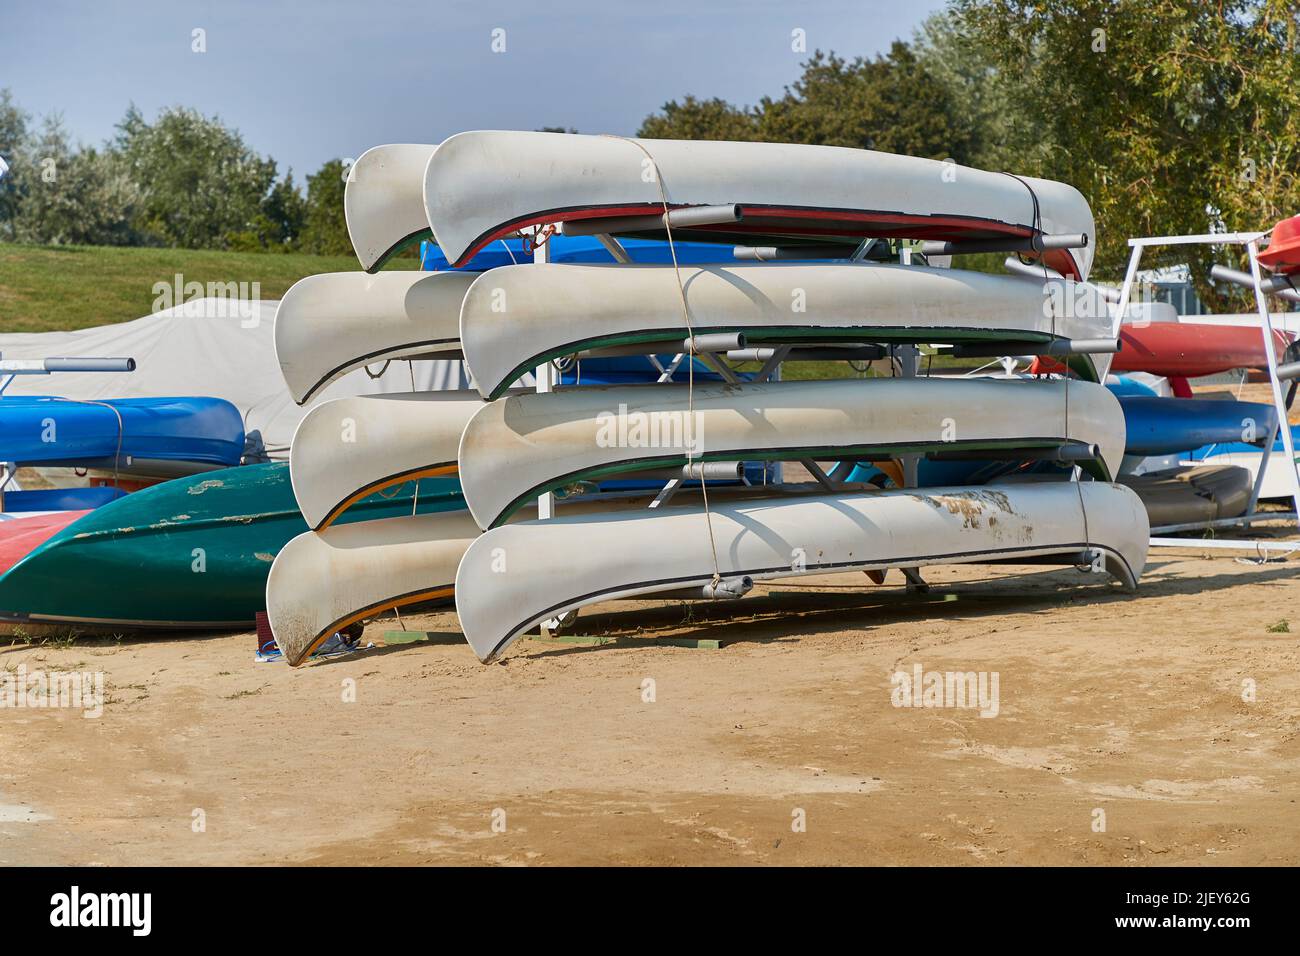 Canoas En un campamento Foto de stock